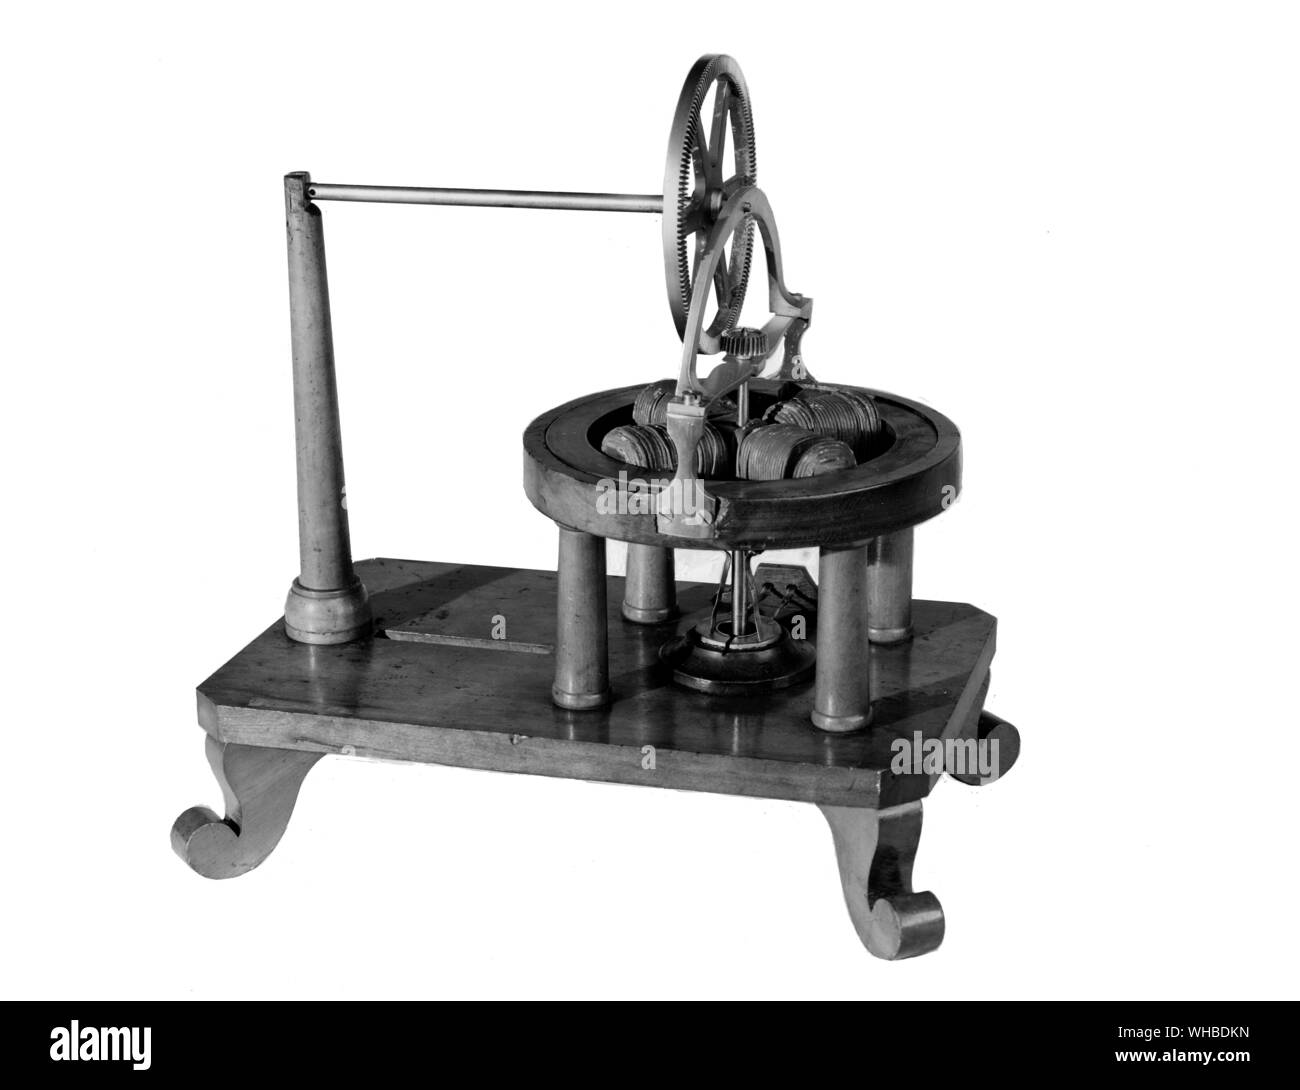 Davenport eléctrico del motor 1837 - El primer motor eléctrico capaz de aplicación práctica fue patentado por Thomas Davenport de Rutland, Vermont. El 25 de febrero de 1837. Él puso dos motores de 50 libras de su propio diseño para trabajar en el mismo año, uno para la perforación de agujeros de hasta un cuarto de pulgada de diámetro en hierro y acero, el otro para torneado de madera dura.. Foto de stock